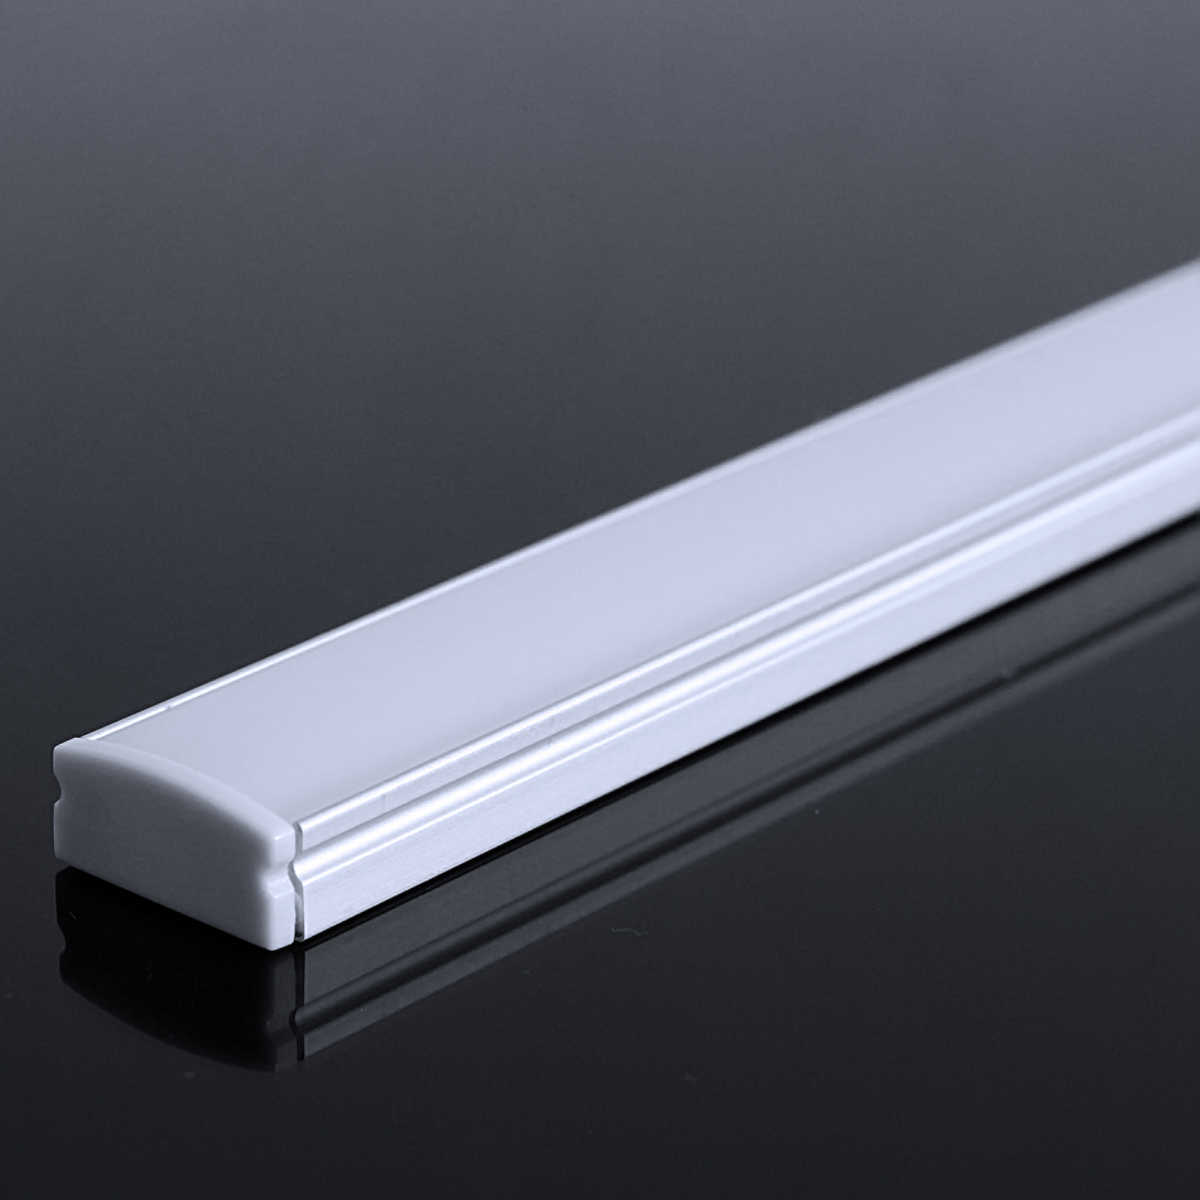 LED Flachprofil "Slim-Line" | Abdeckung diffus | Zuschnitt auf 130cm |